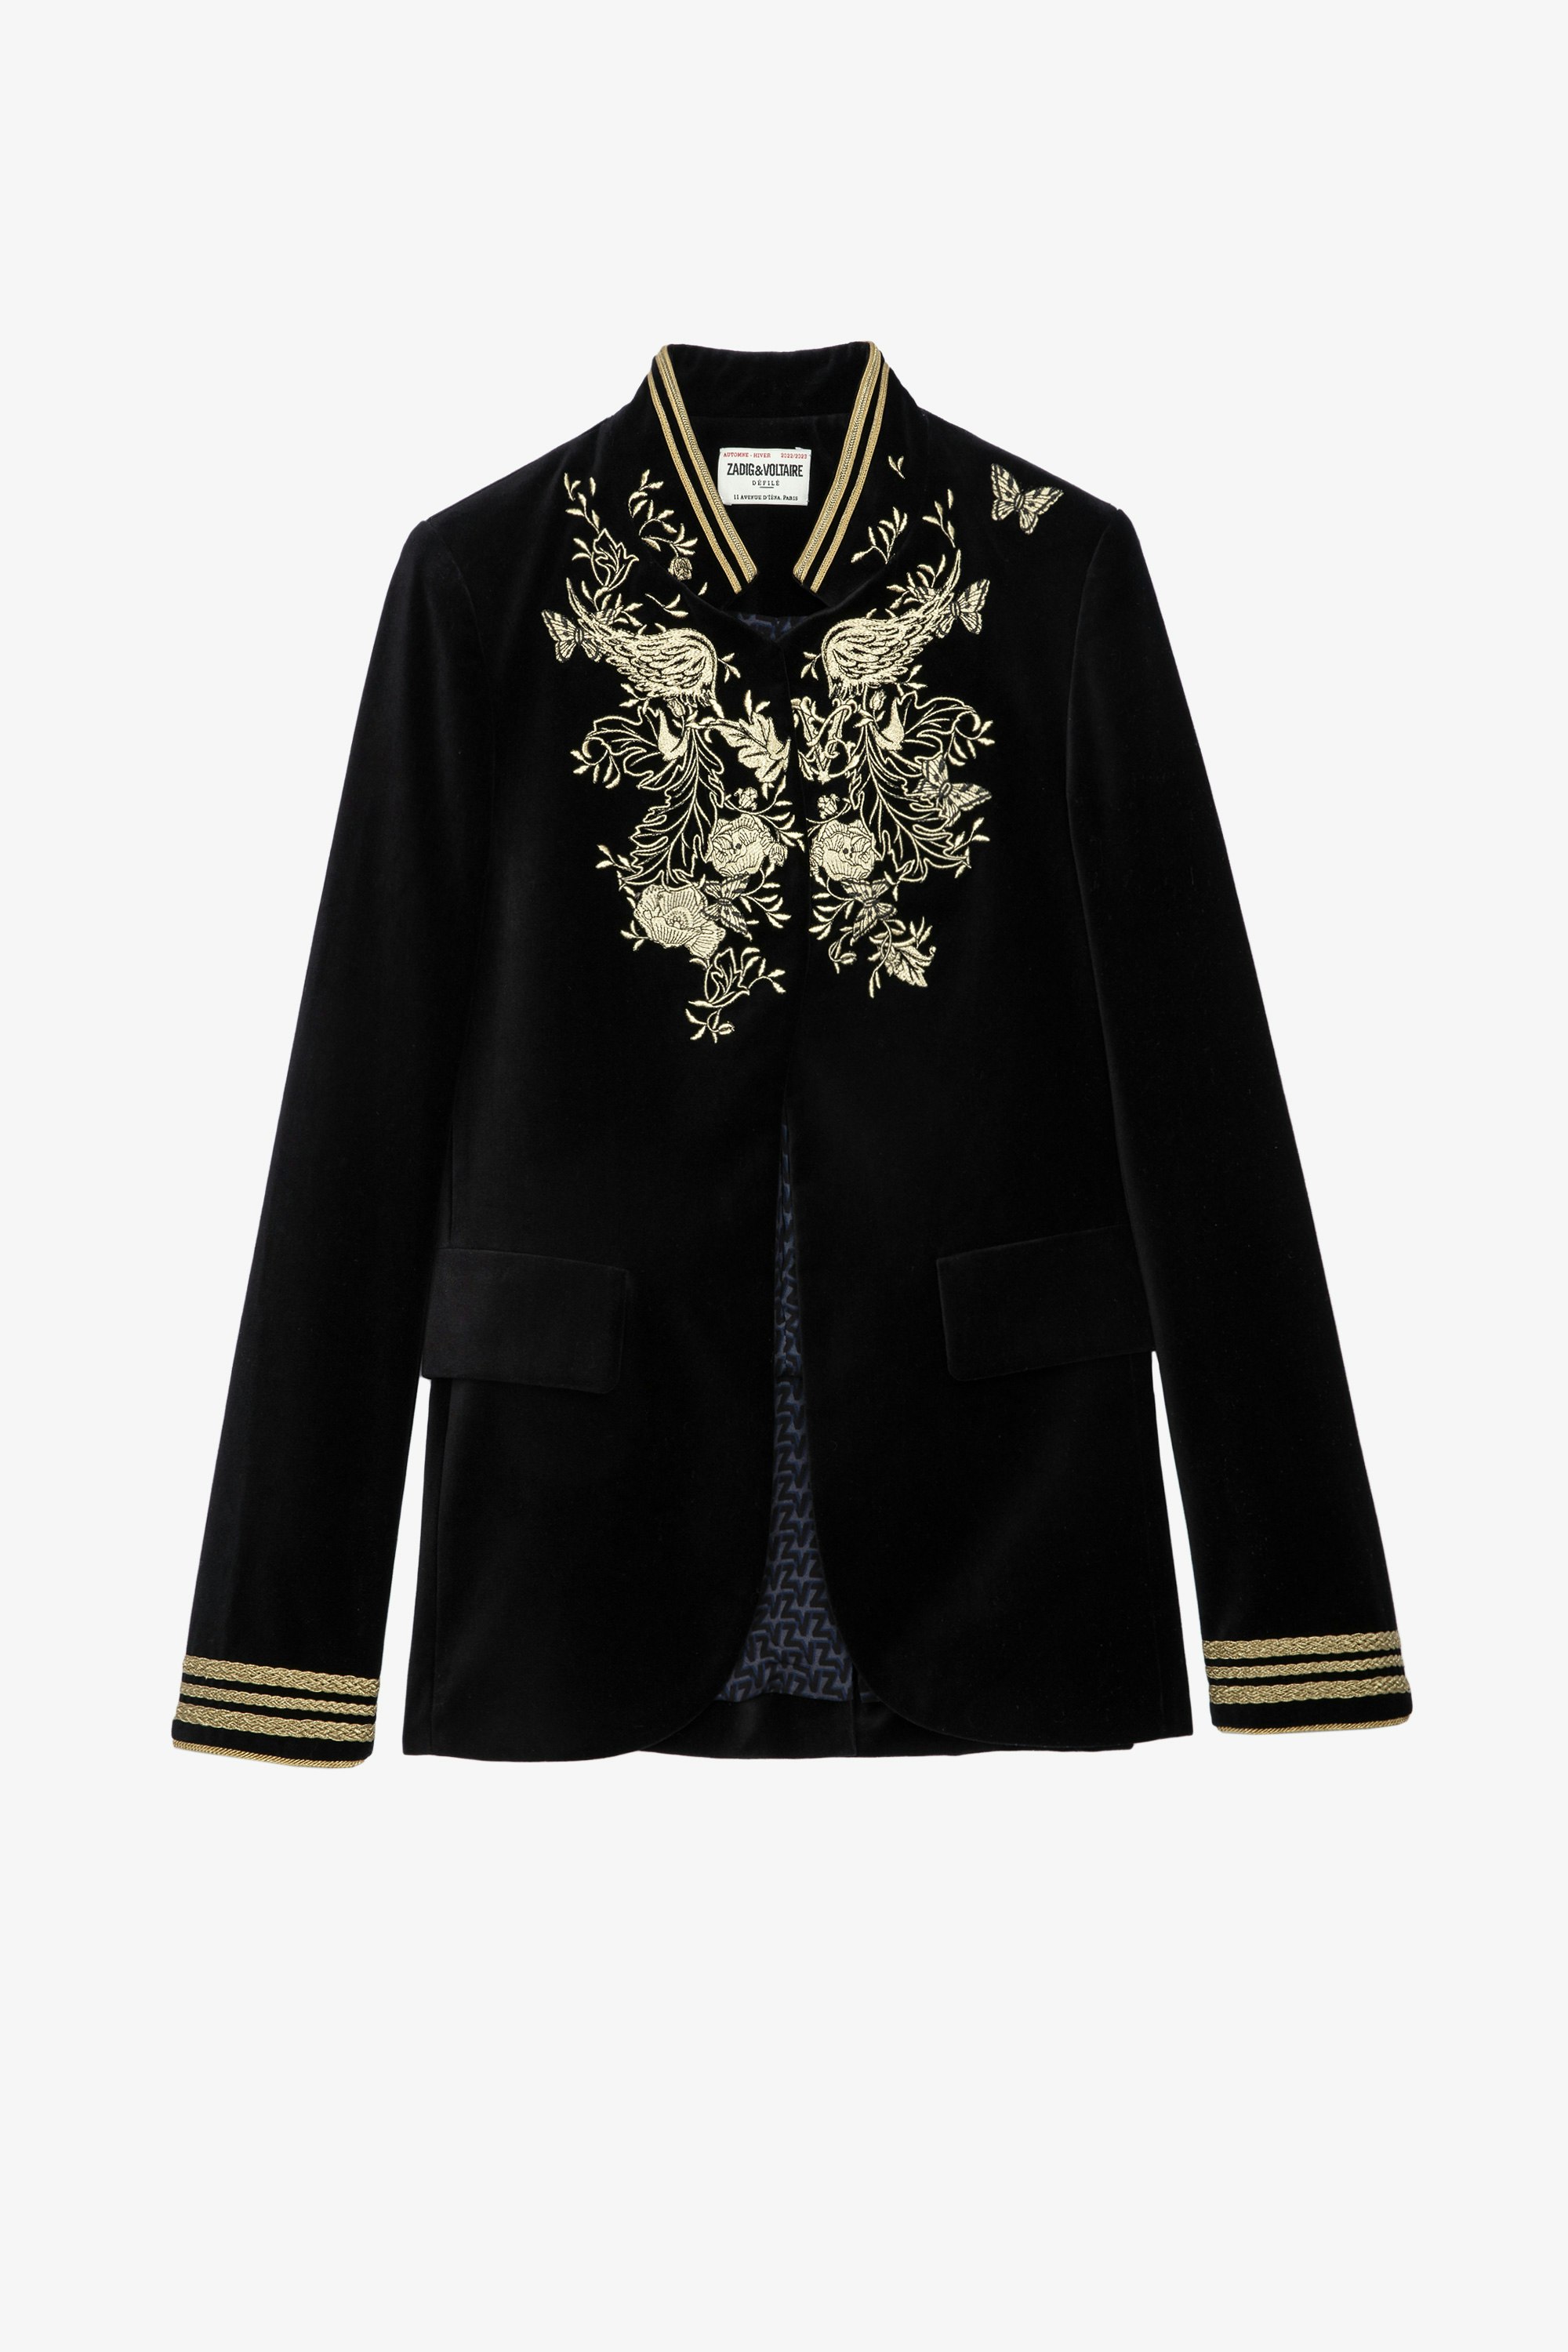 Very Velvet ジャケット Women’s Very jacket in black velvet with gold embroidery 